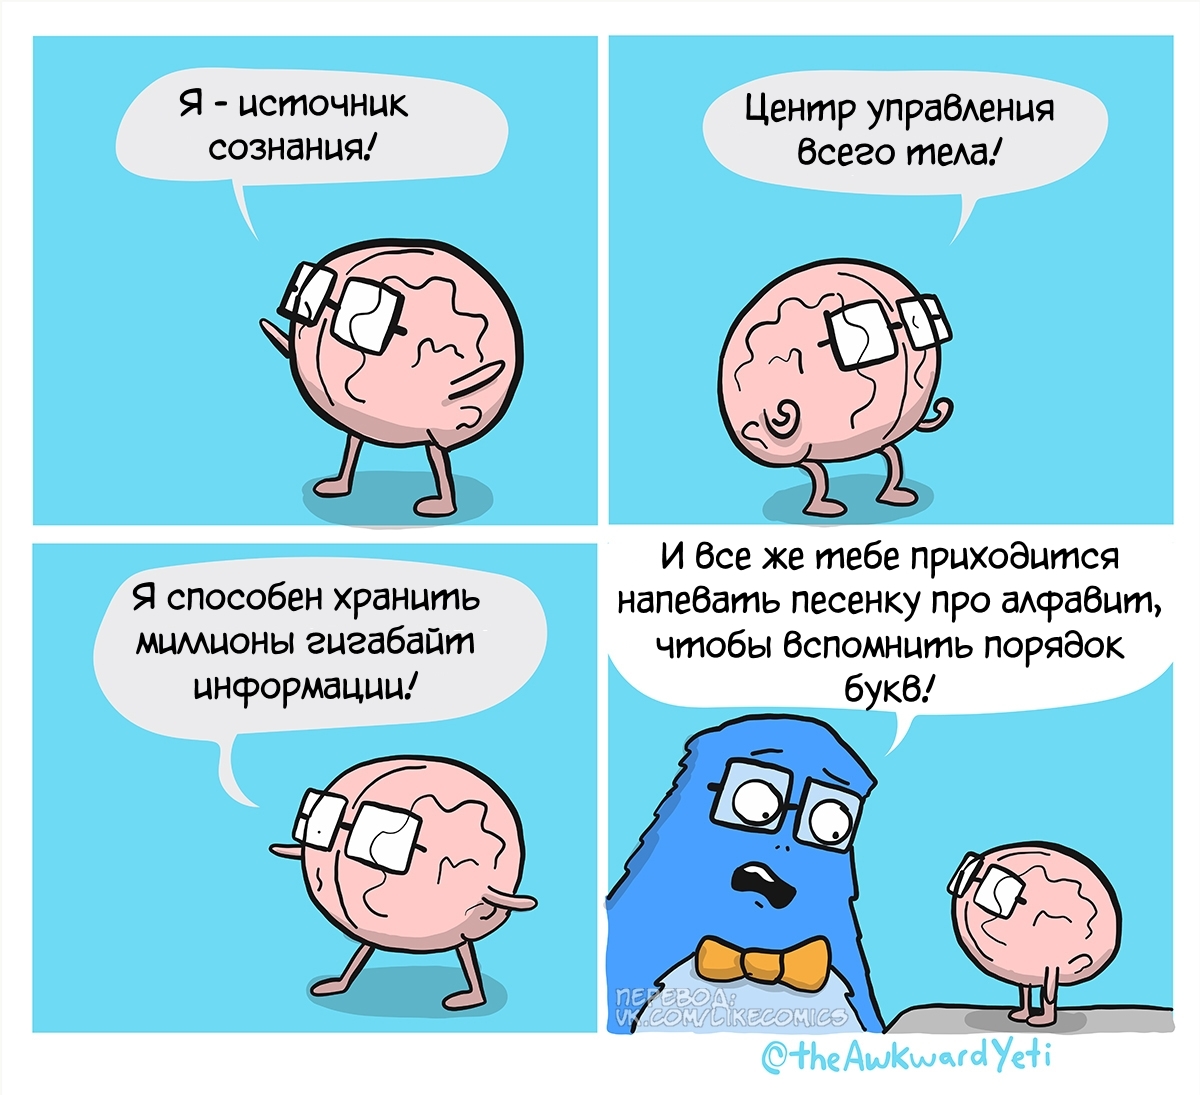 Brain - Awkward yeti, Comics, Translated by myself